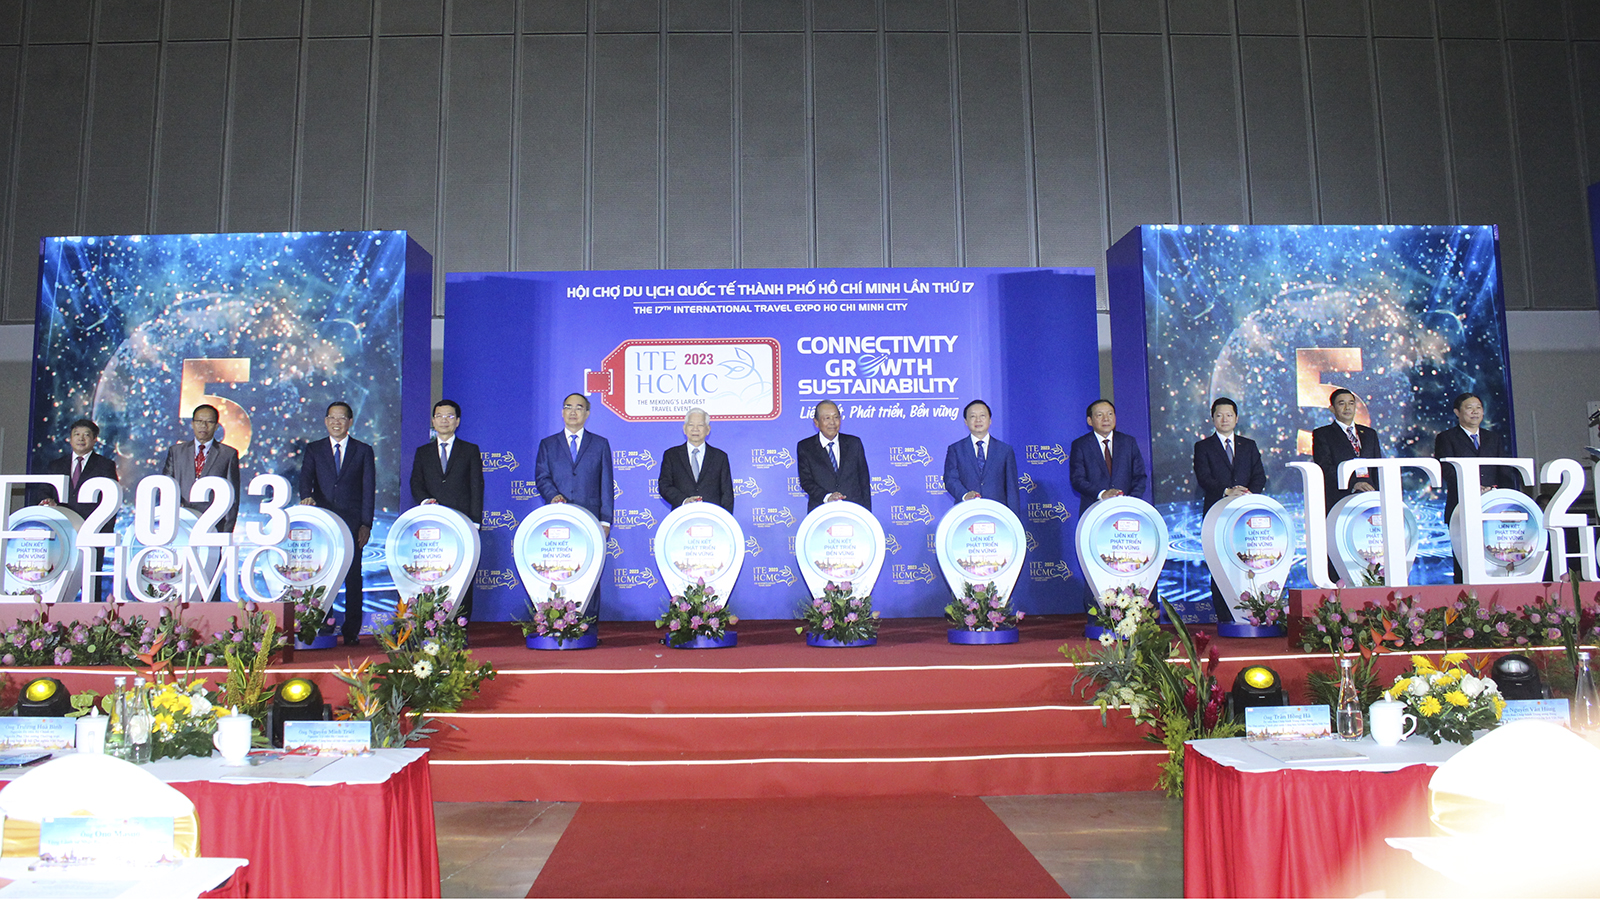 Khai mạc Hội chợ du lịch quốc tế ITE HCMC 2023, tăng cường kết nối để phục hồi và phát triển